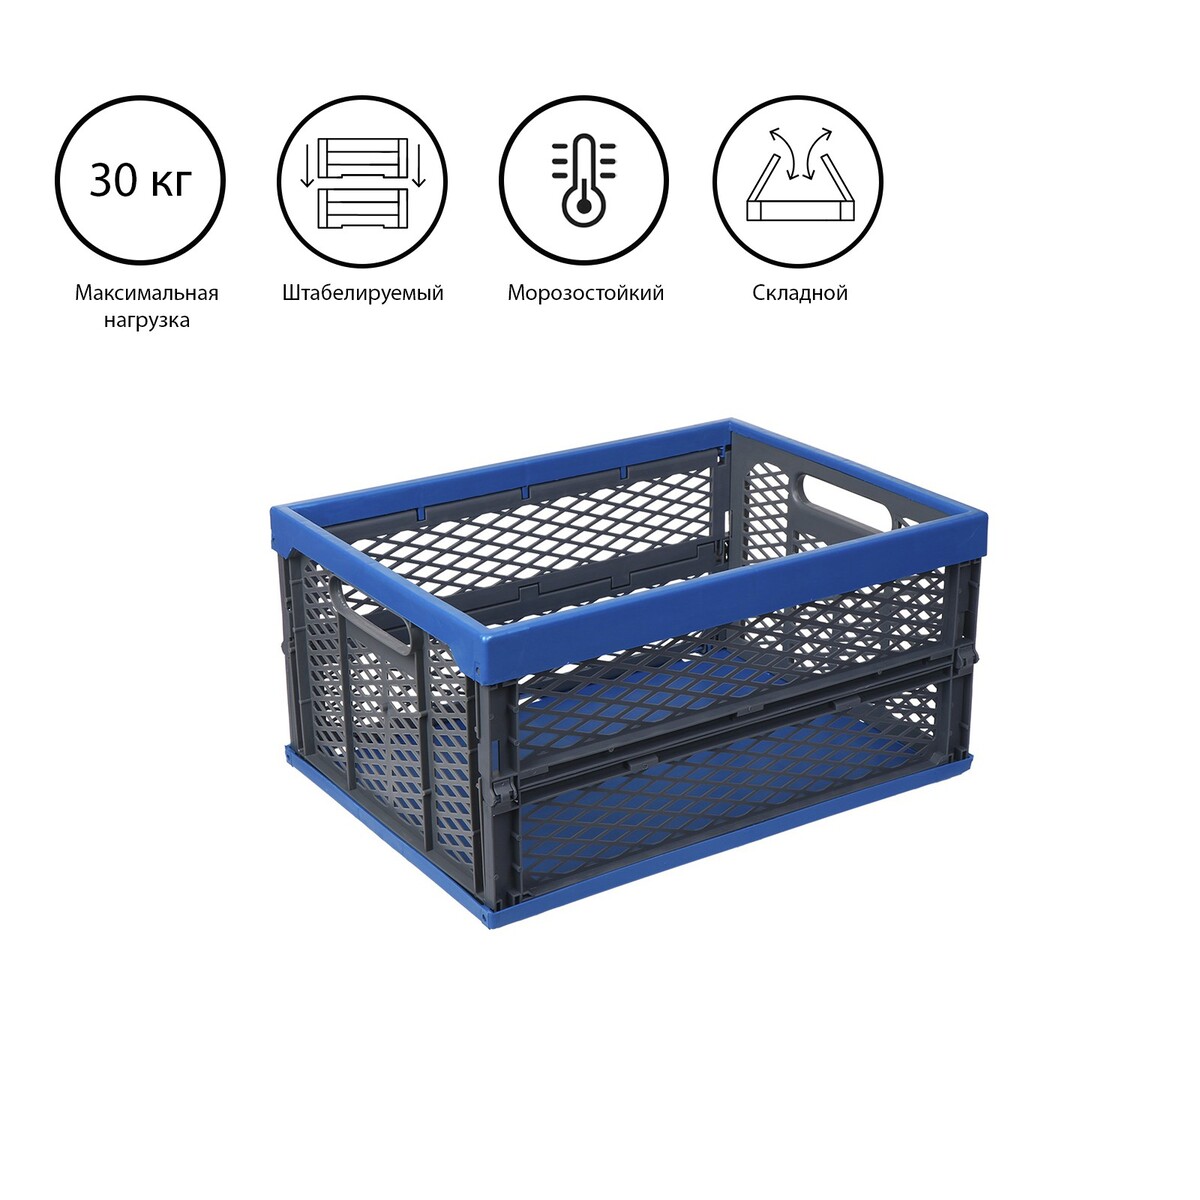 Ящик складной, пластиковый, 47 × 34 × 23 см, на 30 кг, сине-серый шкаф тканевый каркасный складной ladо́m 125×45×168 см серый